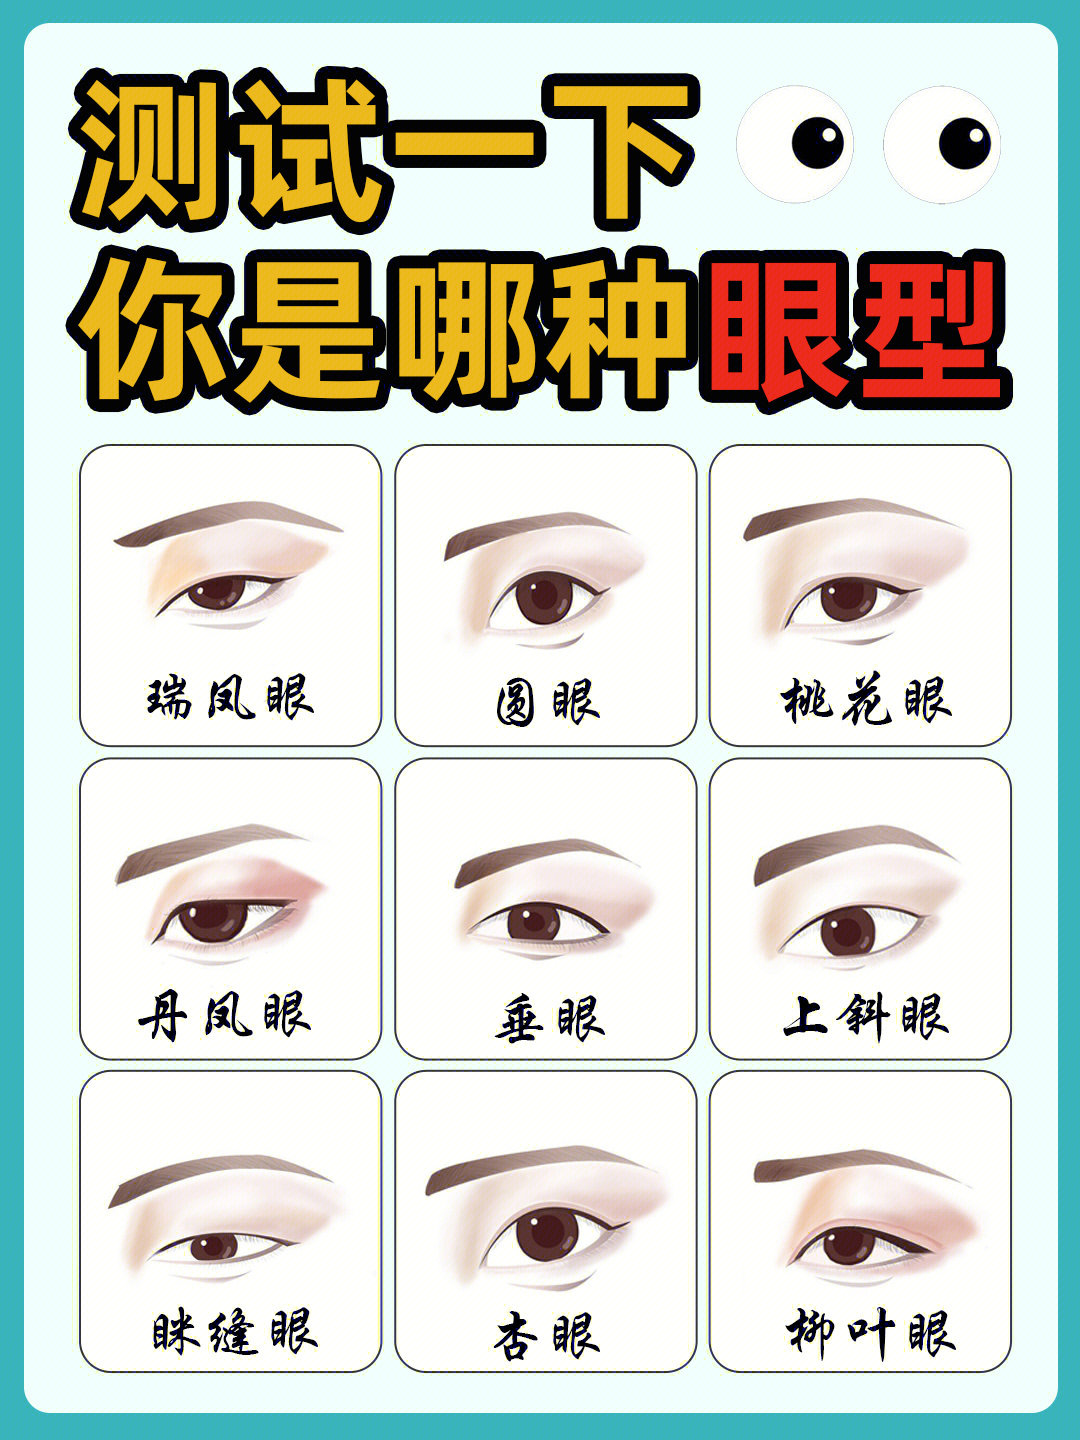 眼型测试测试一下你是标准的美人眼型吗